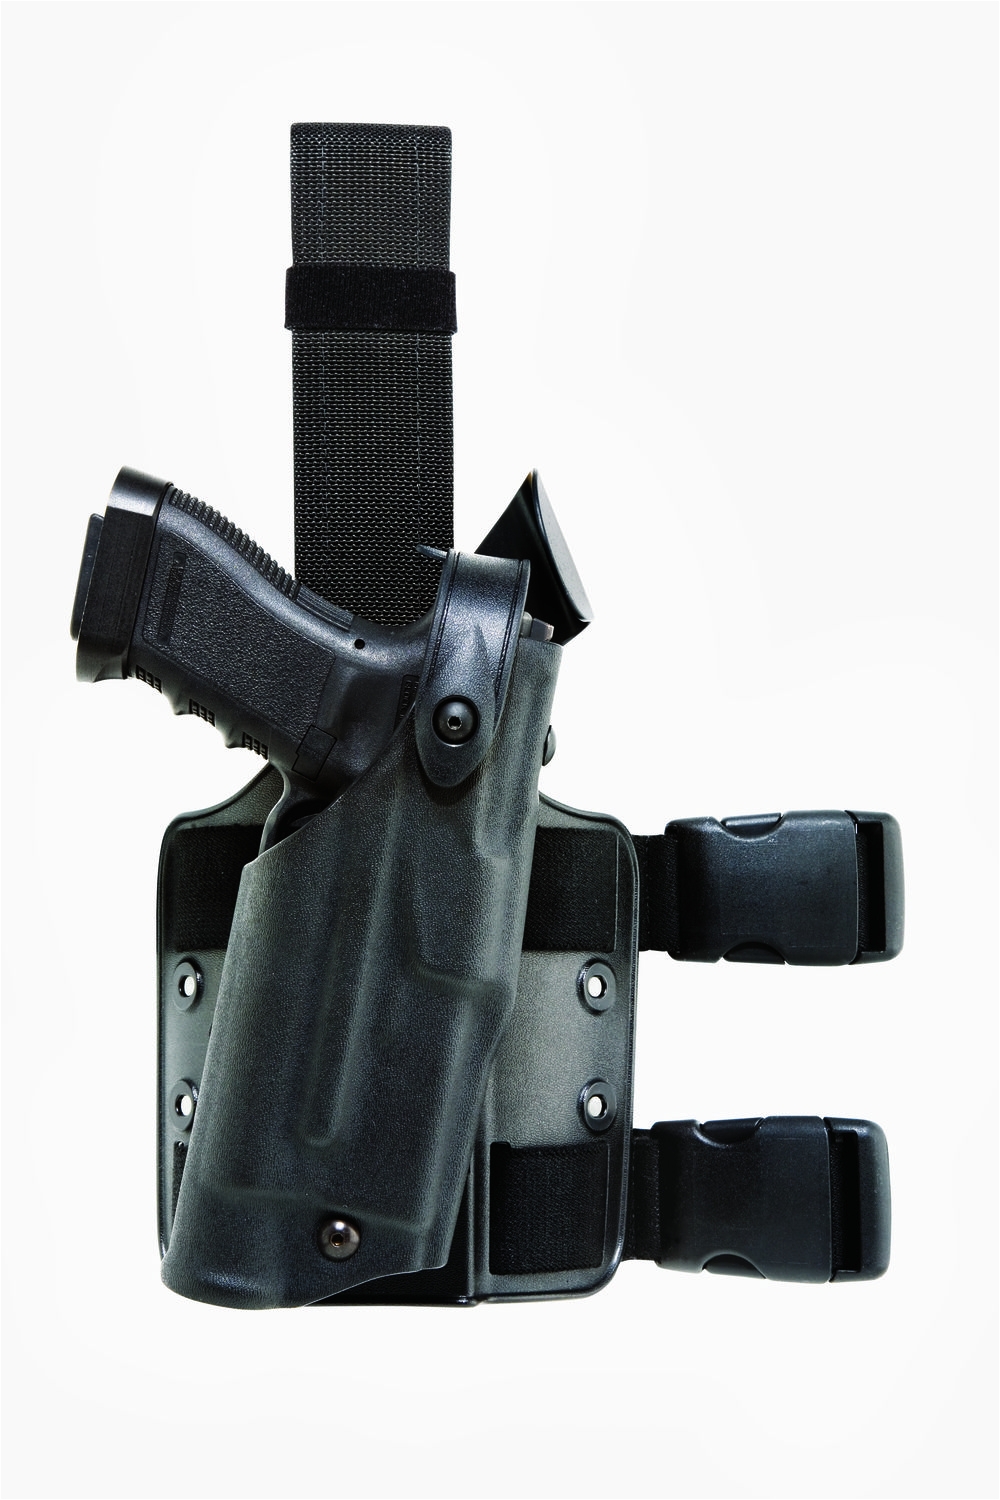 model 6304 alsa drop rig tactical holster black